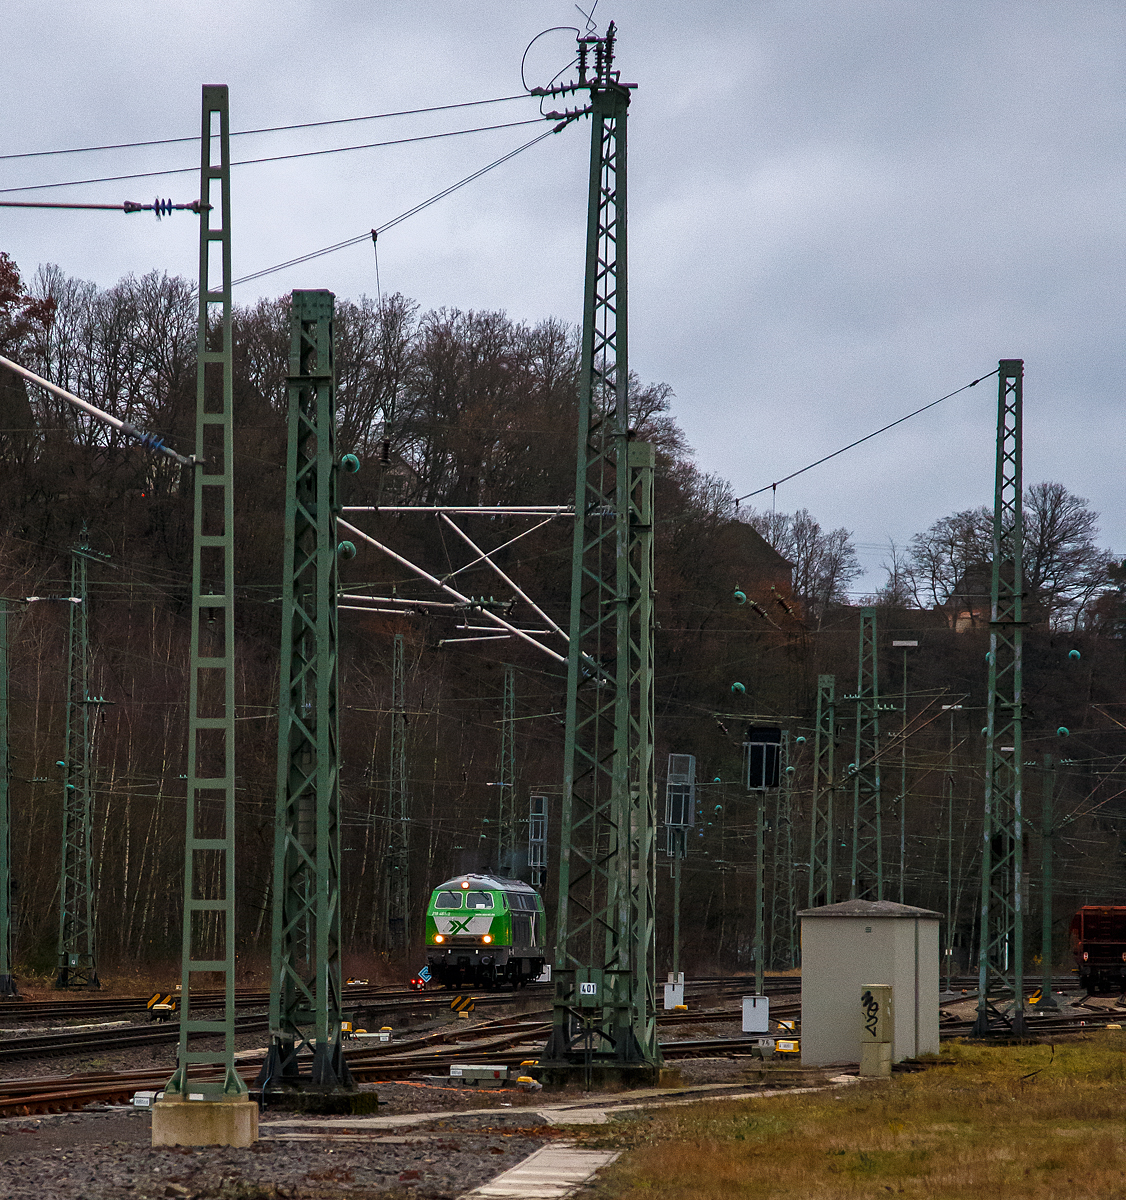 Da kommt sie....
Die 218 461-2 (92 80 1218 461-2 D-AIX) der der AIXrail GmbH (Aachen) fährt am 03.12.2021, als Lz (Lokzug) bzw. auf Tfzf (Triebfahrzeugfahrt), durch Betzdorf/Sieg in Richtung Siegen.
